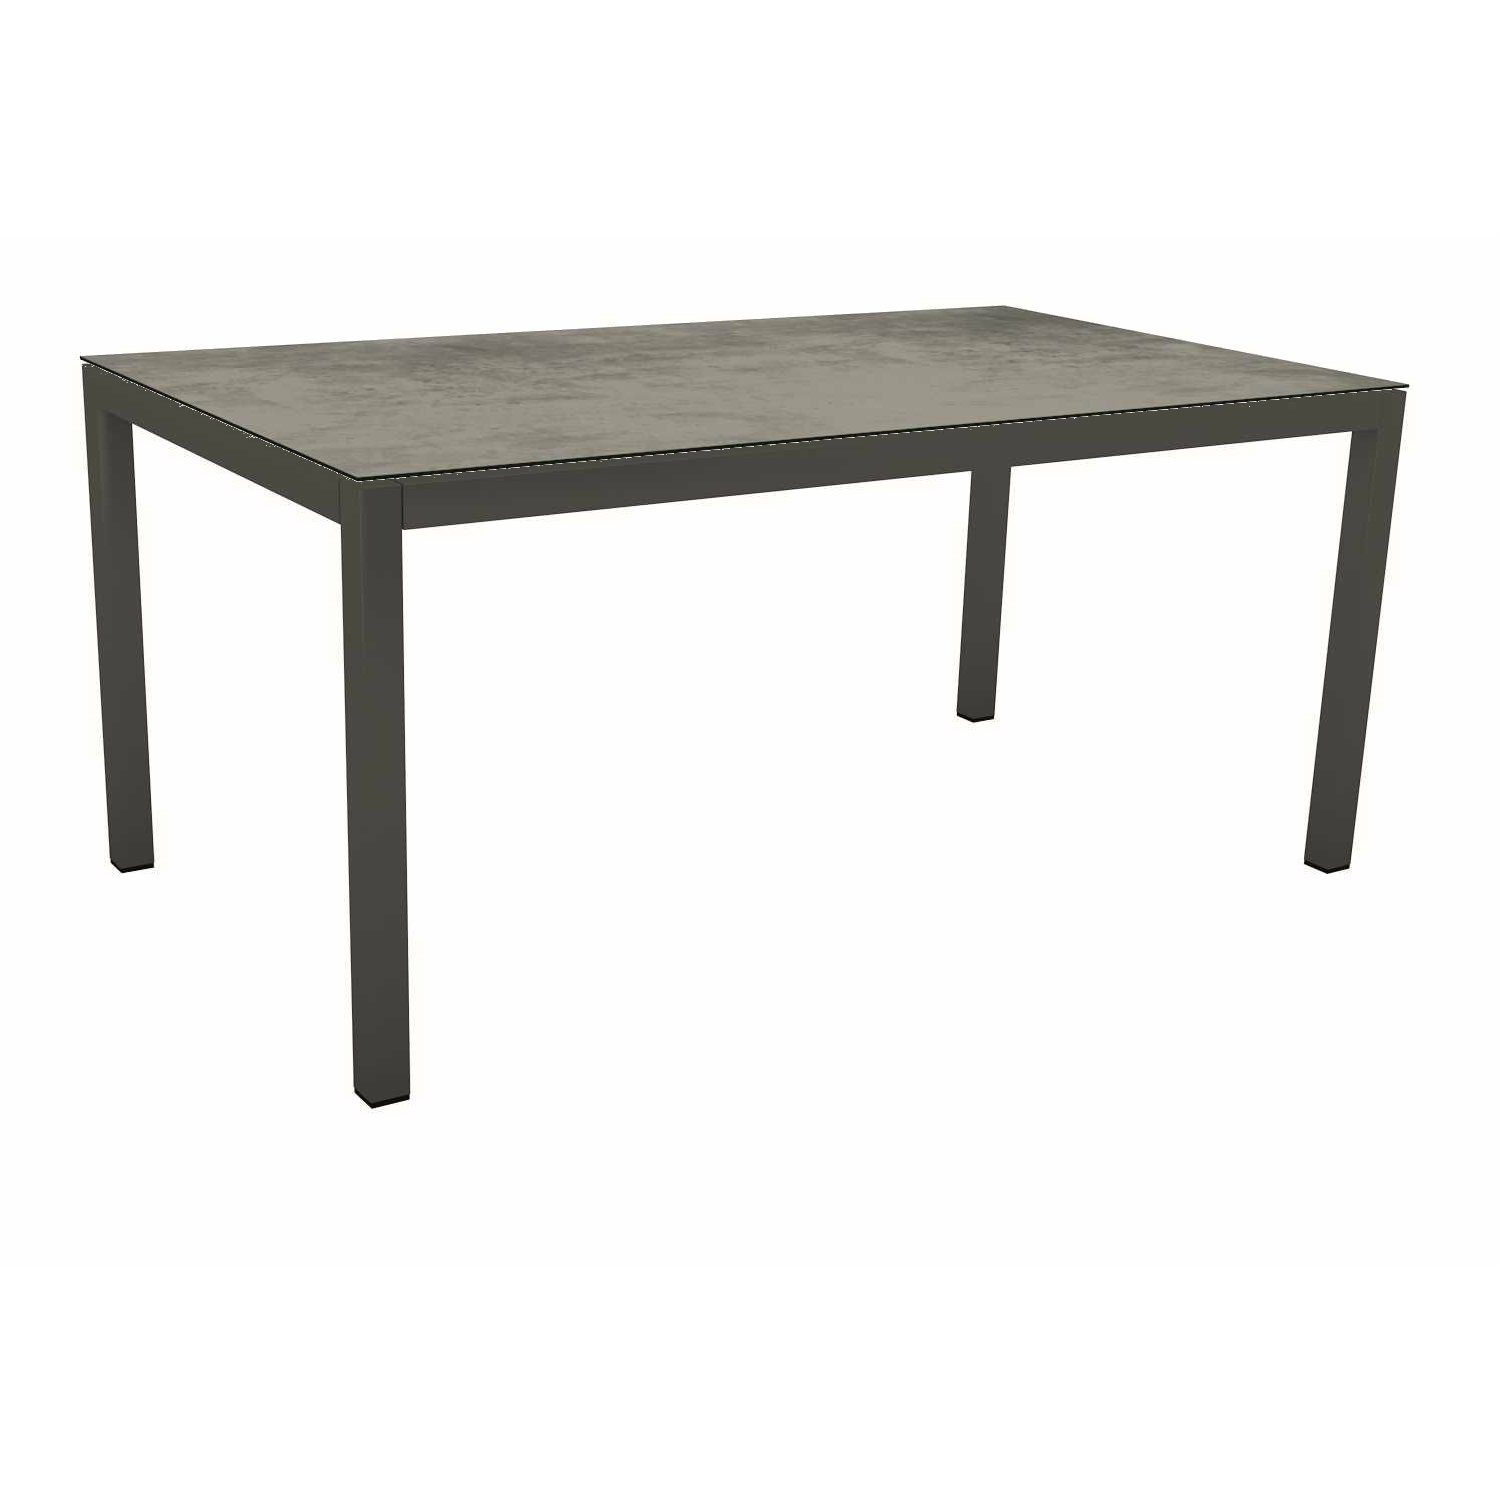 Stern Tischsystem Gartentisch, Gestell Aluminium anthrazit, Tischplatte HPL Zement, Maße: 130x80 cm